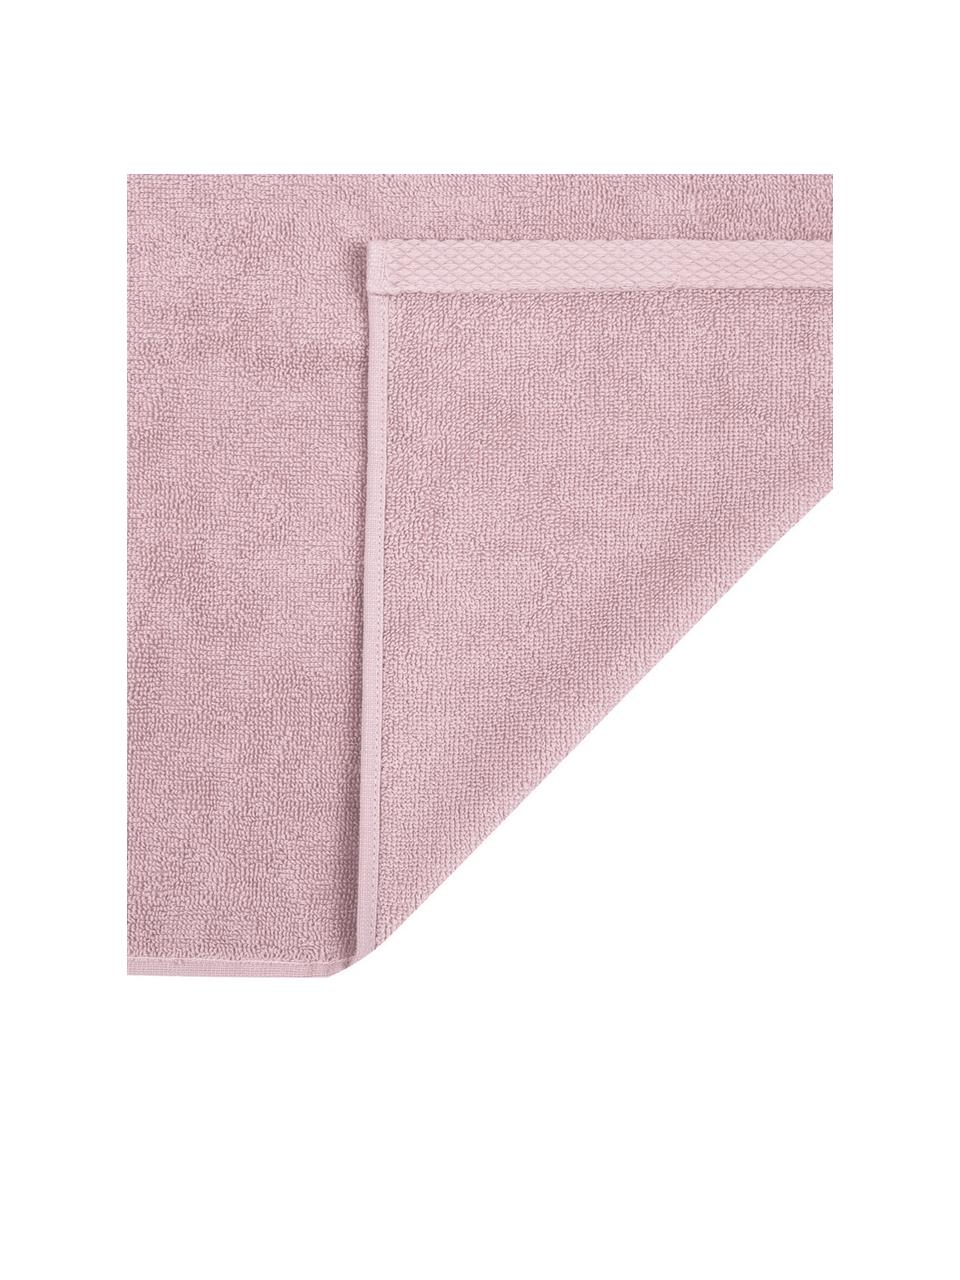 Ręcznik Comfort, różne rozmiary, Brudny różowy, Ręcznik do rąk, S 50 x D 100 cm, 2 szt.